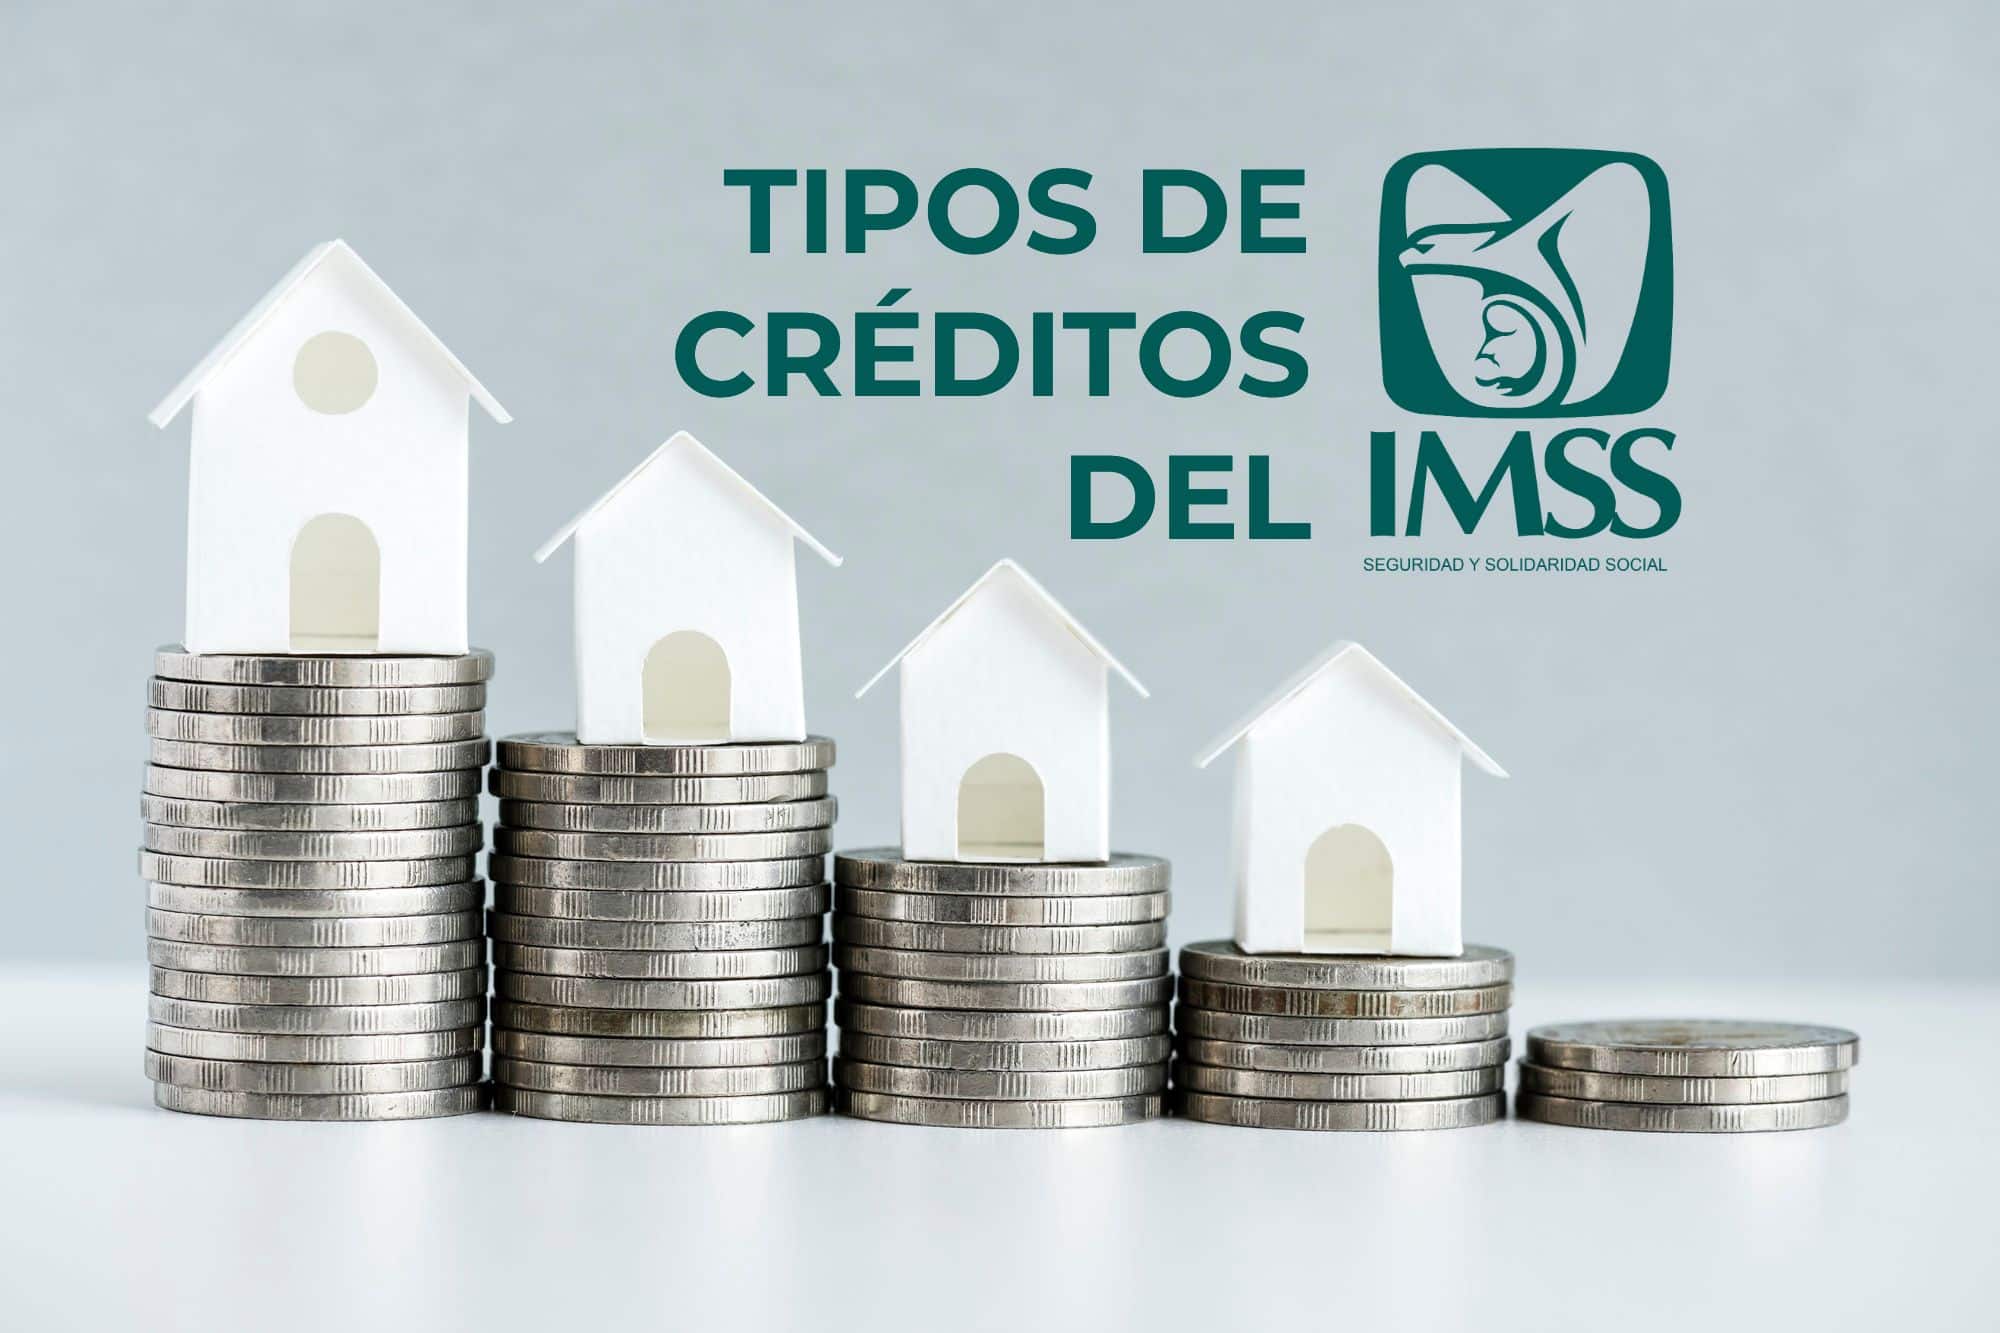 Simulación de prestamos créditos del IMSS realizada con monedas y casas de papel.